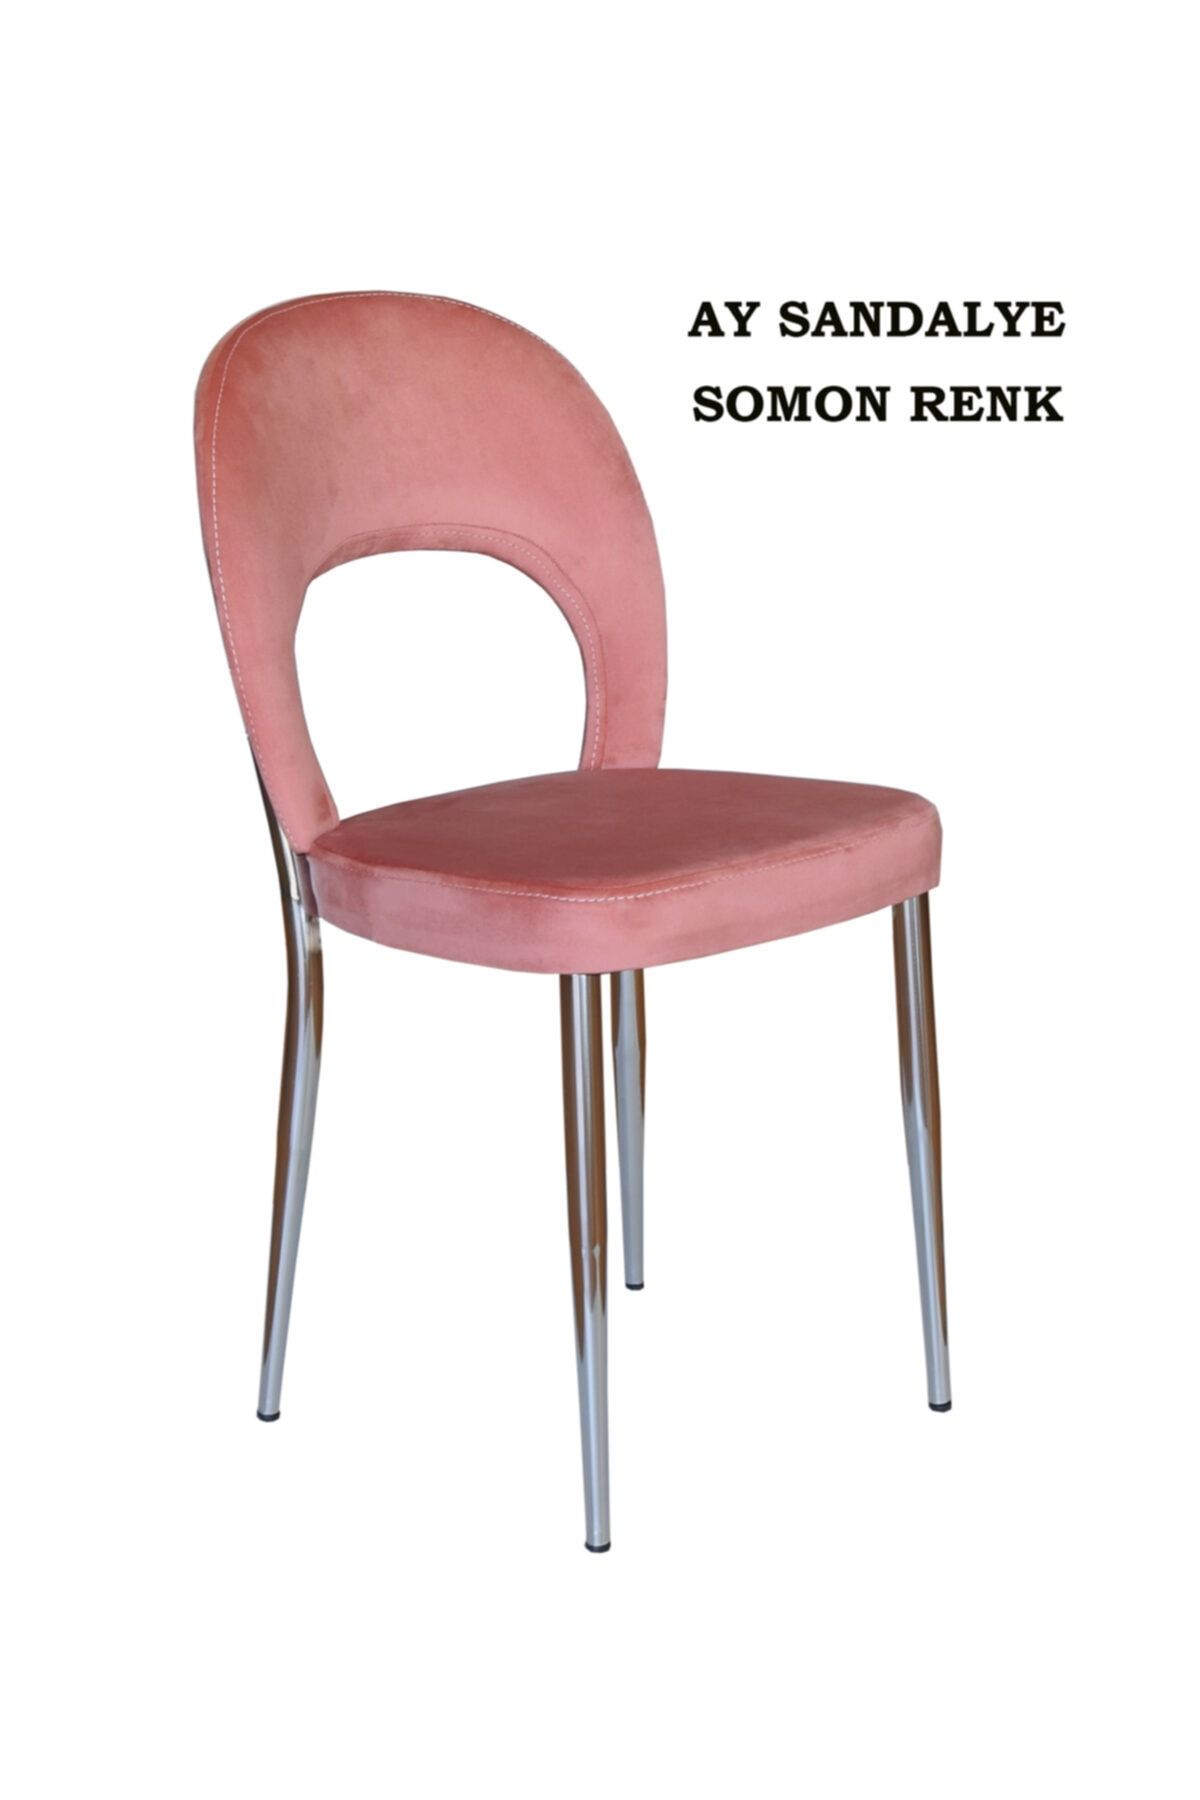 Ankhira Ay Sandalye, Mutfak Sandalyesi, Silinebilir Somon Renk Kumaş, Krom Ayaklı